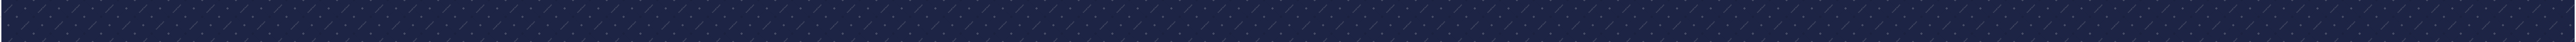 темно-синяя столешница в PNG, SVG